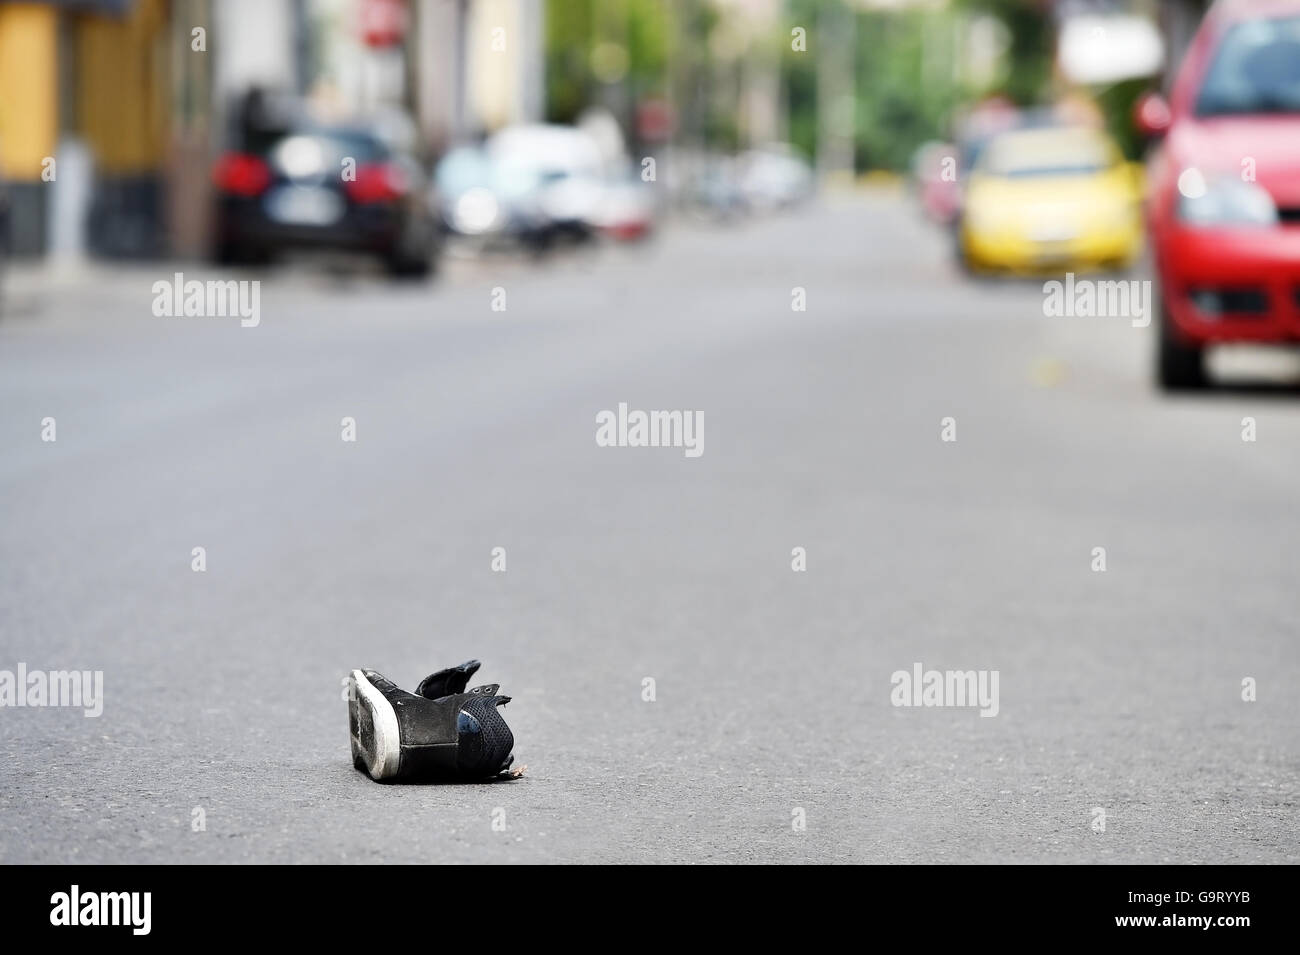 Ses chaussures dans la rue avec des voitures en arrière-plan après victime a été heurté par le véhicule Banque D'Images